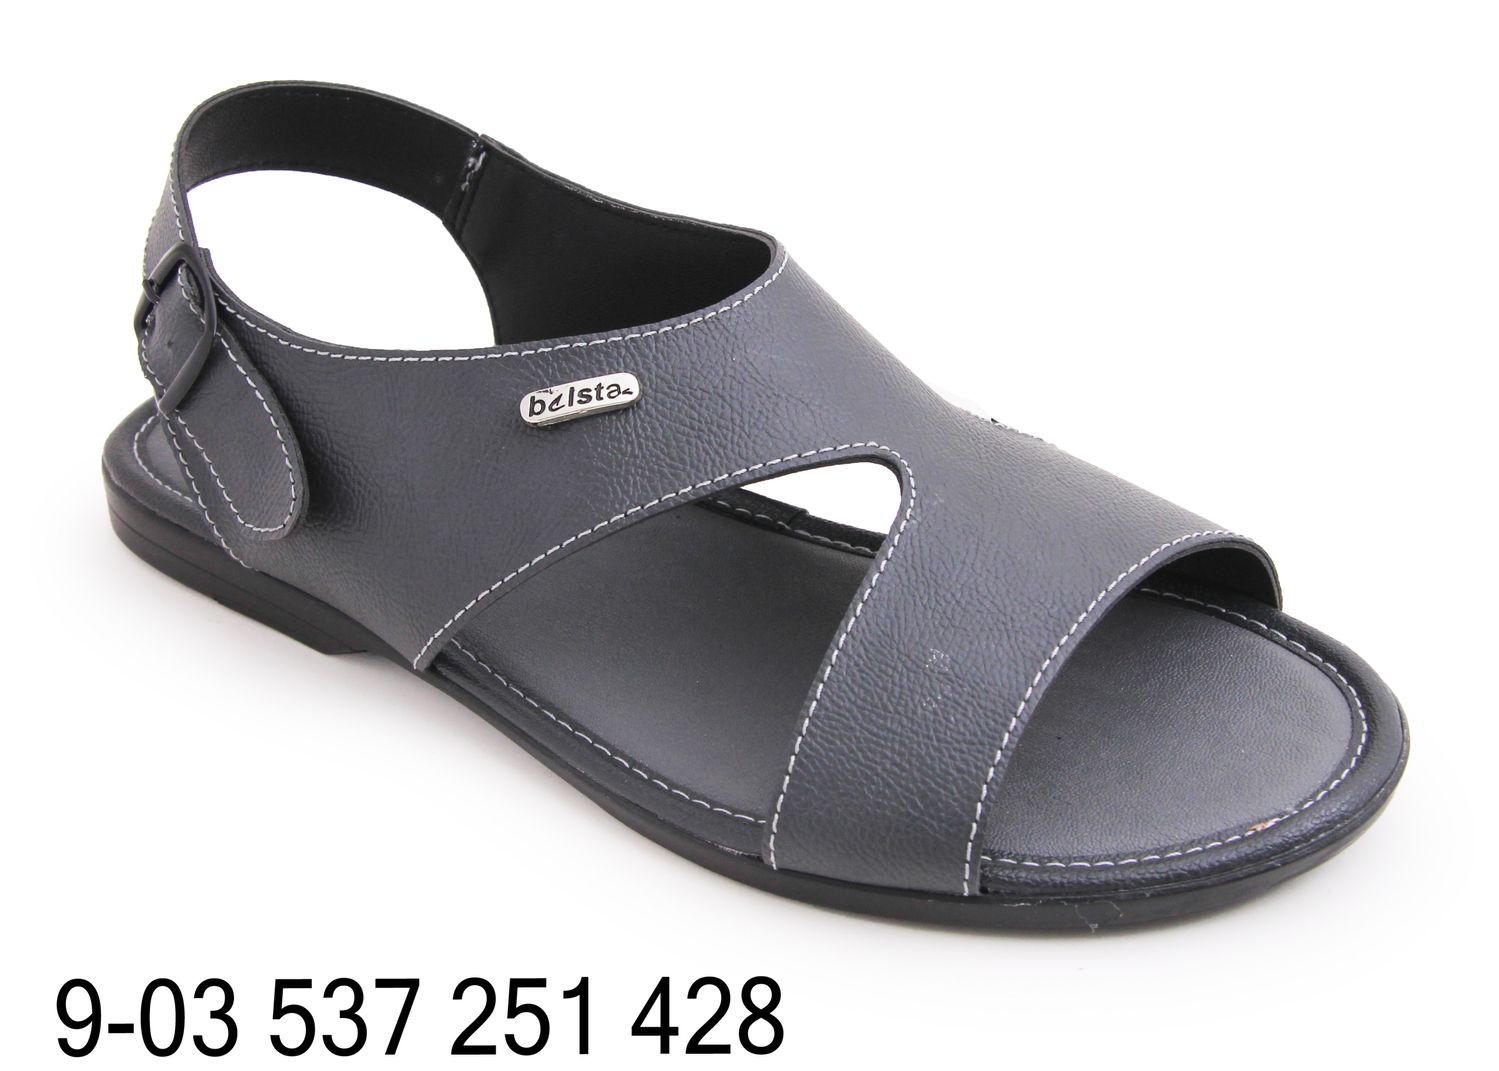 Men's sandals BELSTA. Super quality. Reasonable price - 1